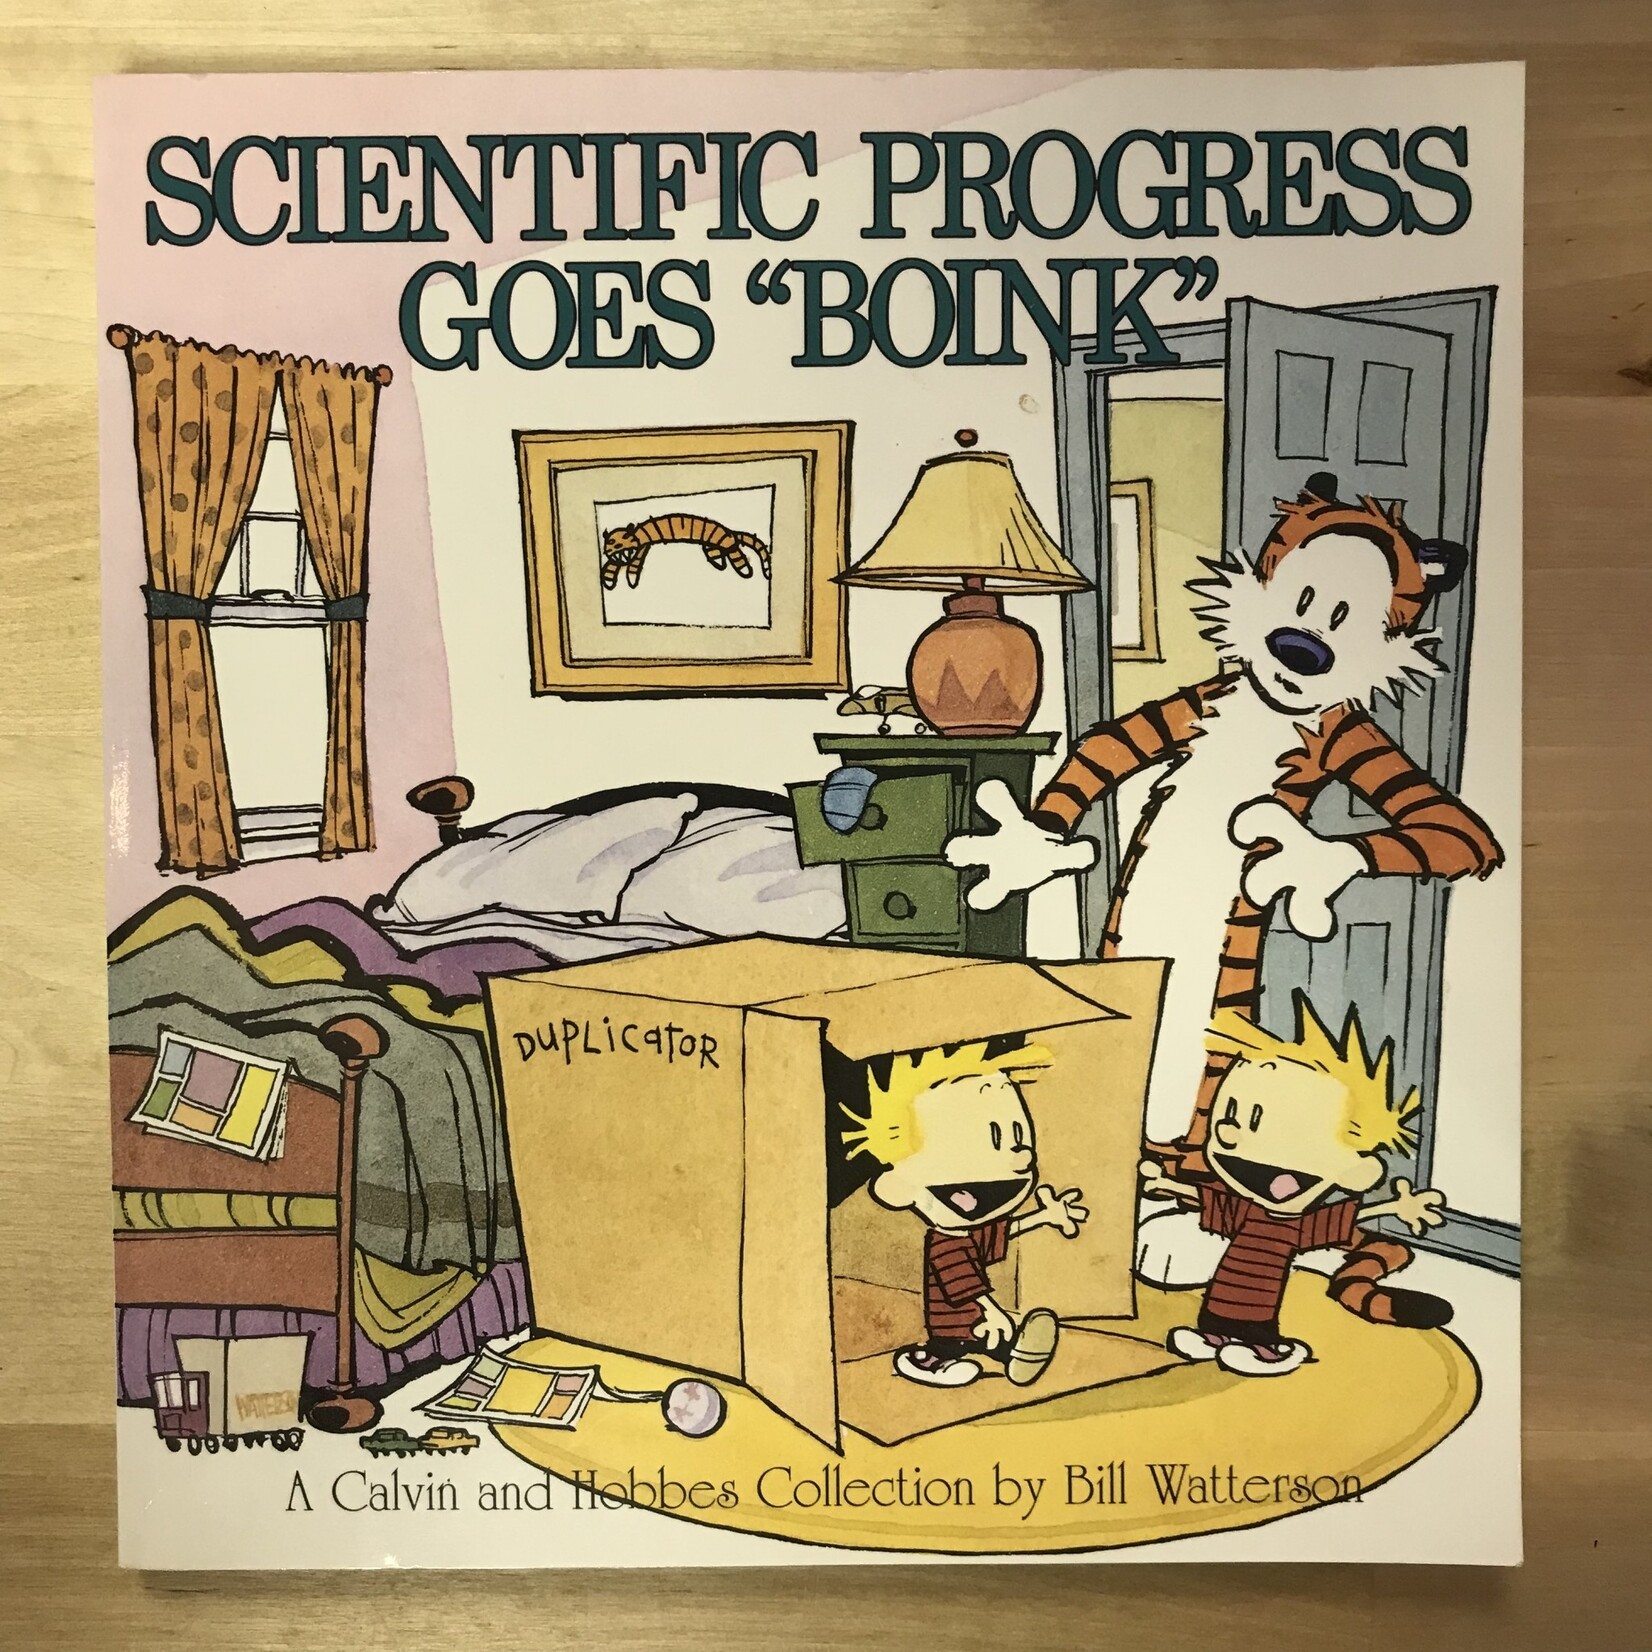 Bill Watterson  - Calvin & Hobbes -  Scientific Progress Goes “Boink” - Paperback (USED)